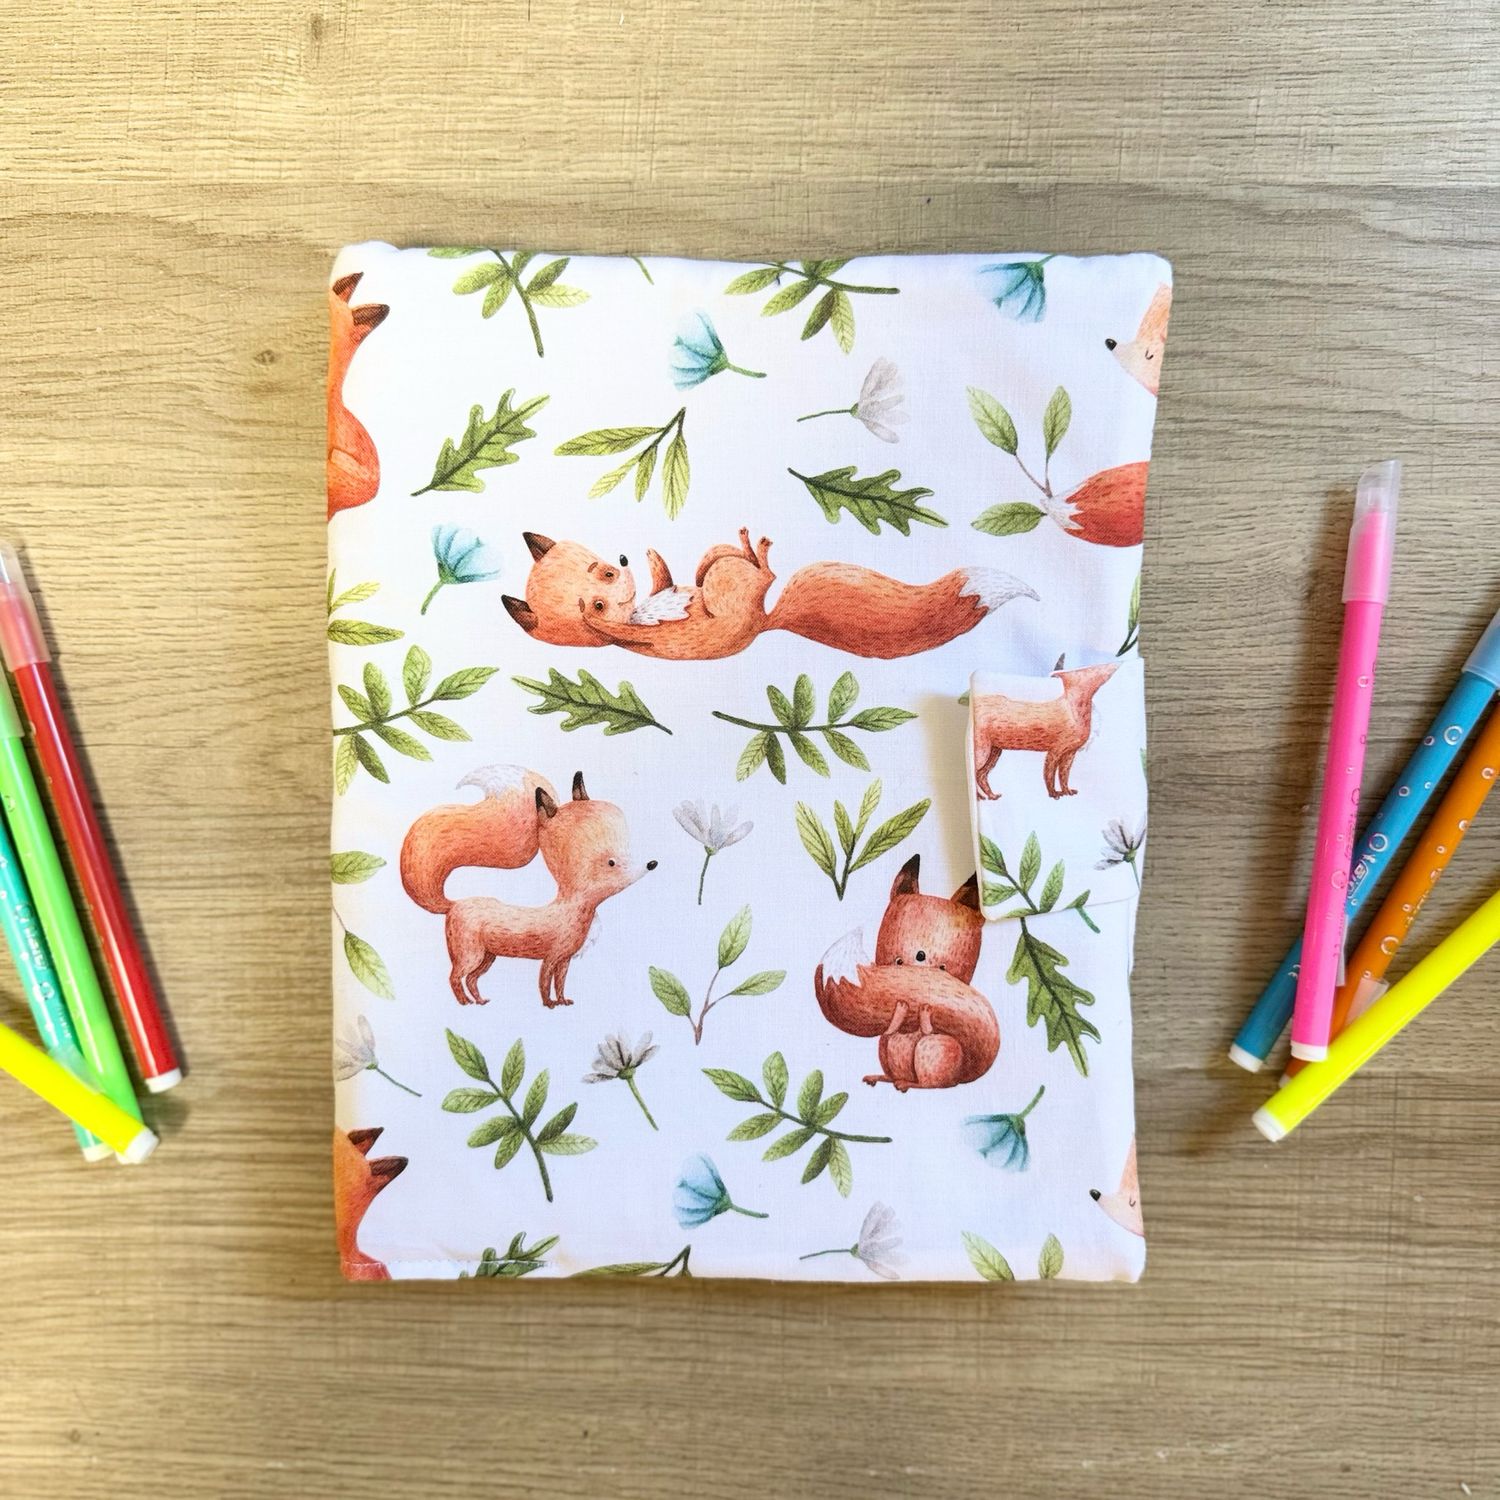 Cahier de coloriage lavable, couverture motifs renards